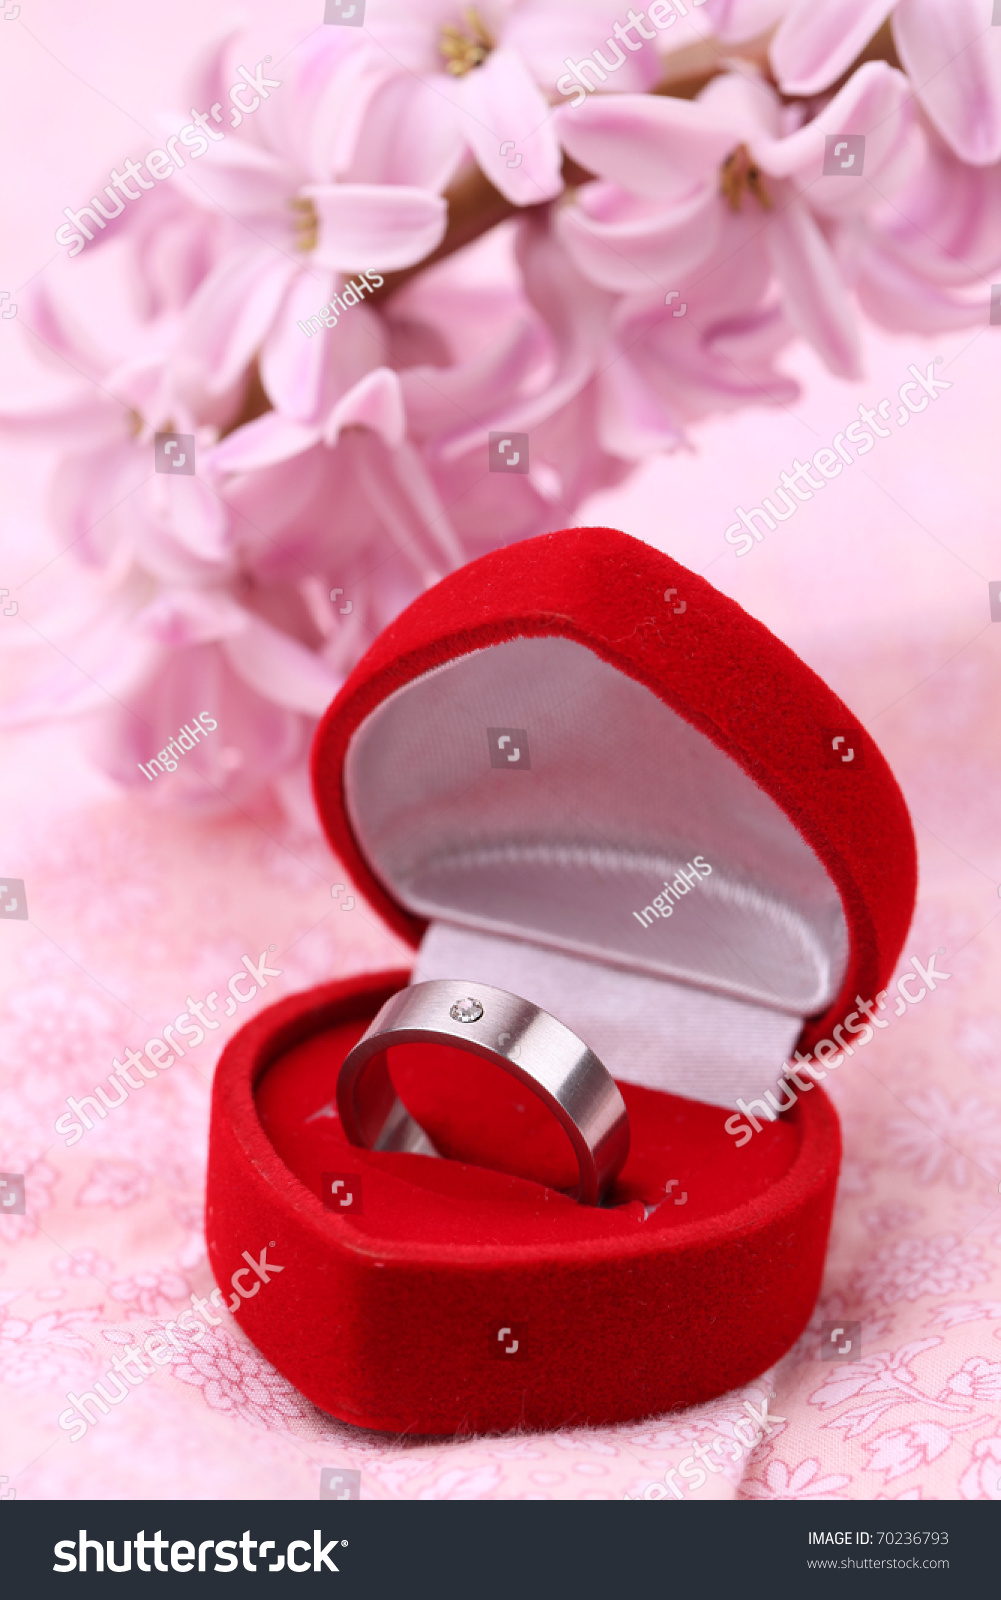 Titanium engagement rings with diamonds